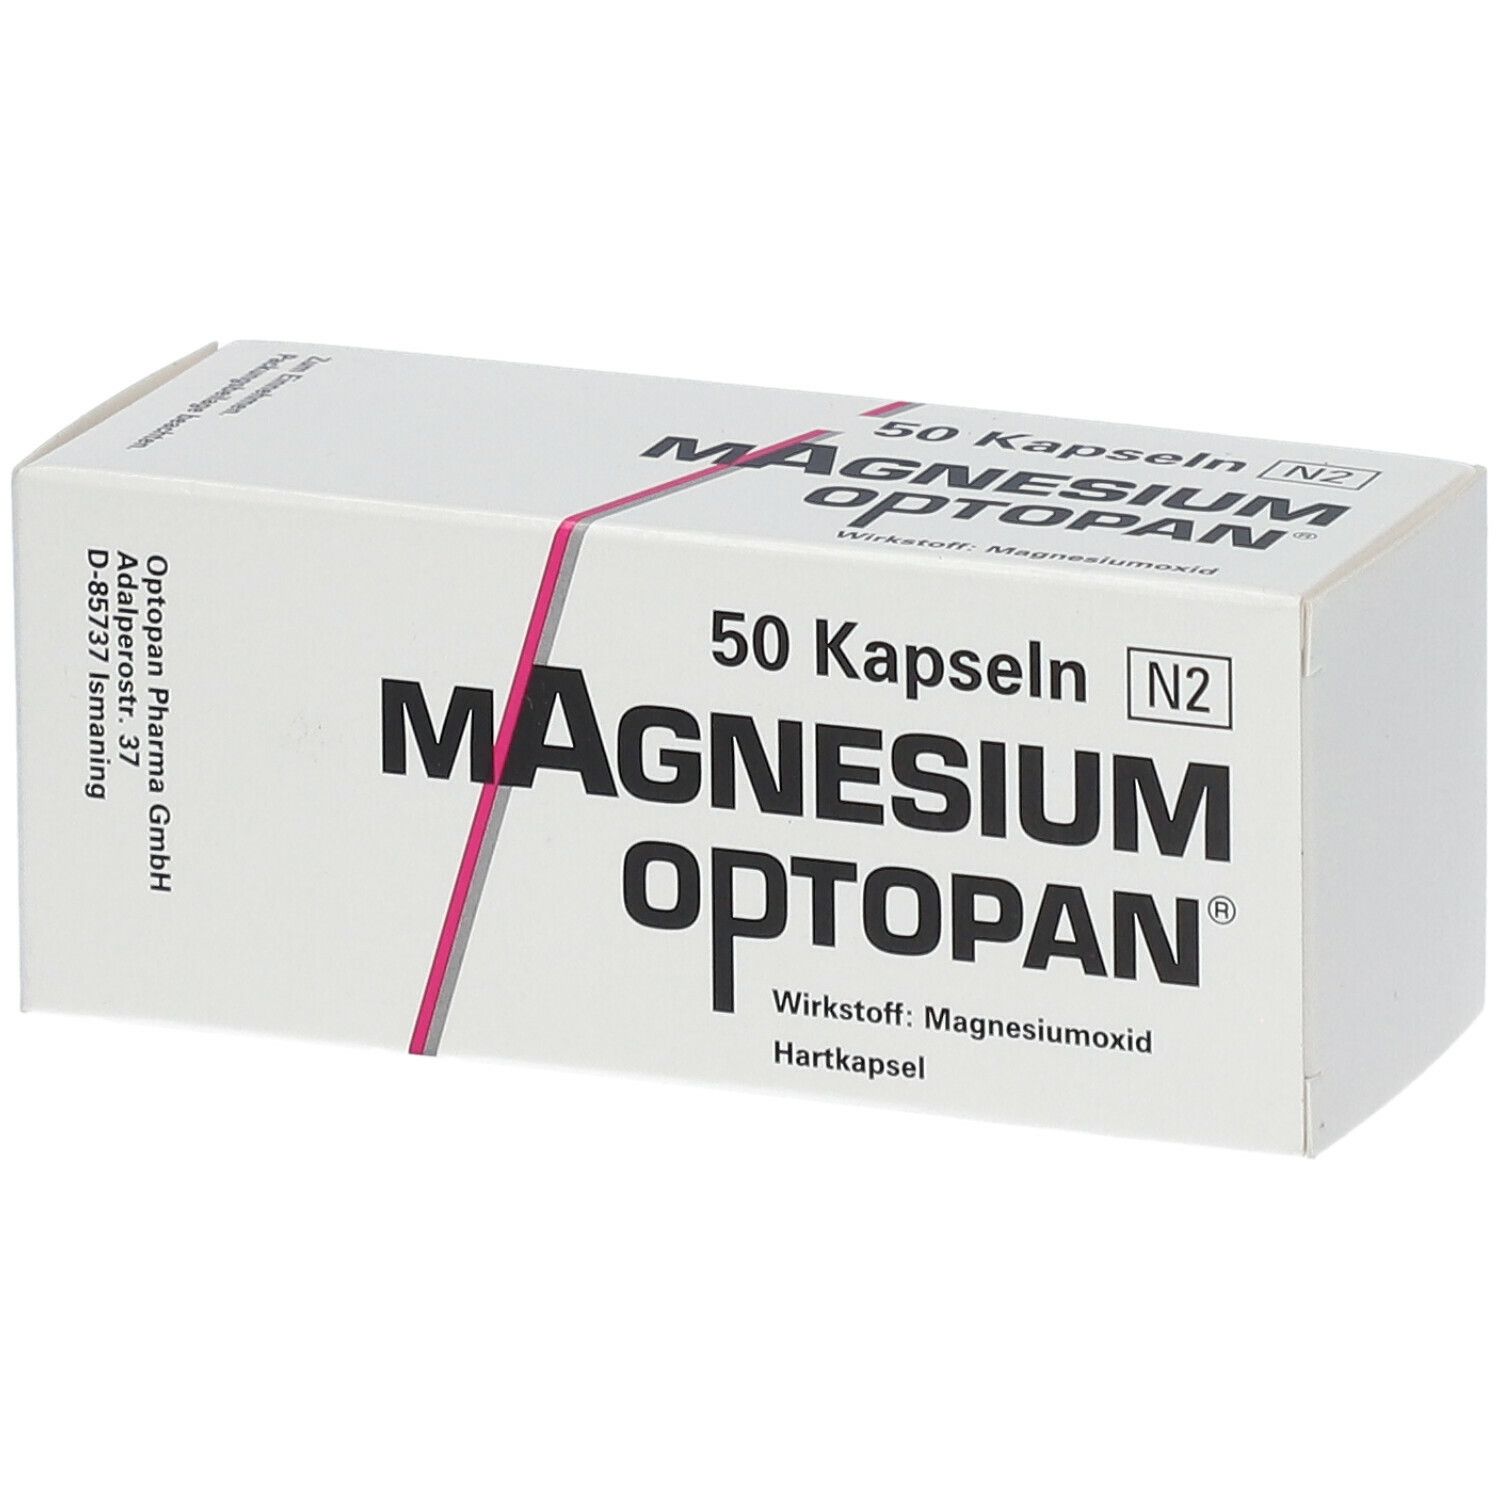 Magnesium-Optopan® Kapseln